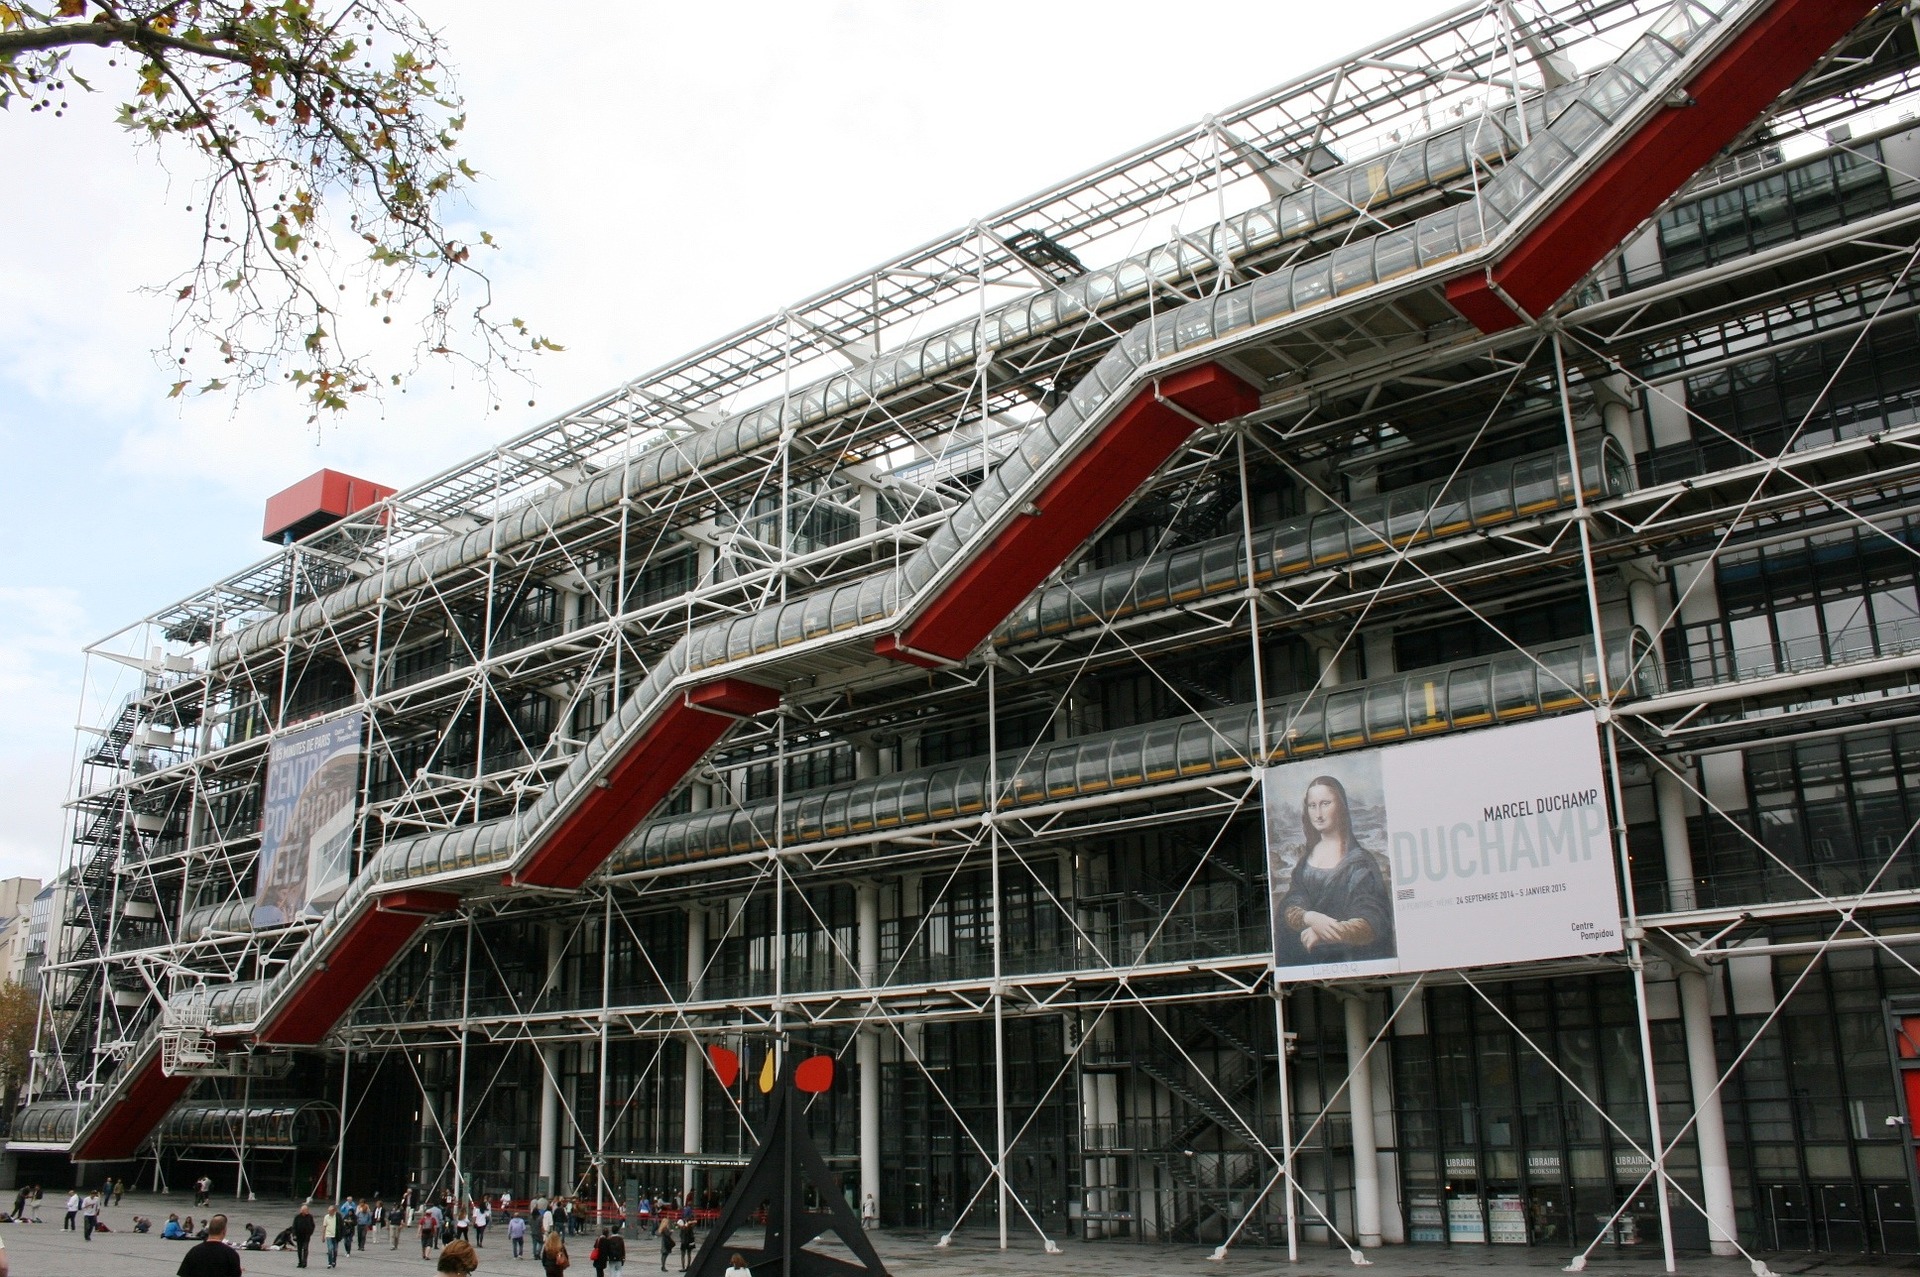 het culturele centrum Centre Pompidou van buitenaf gezien